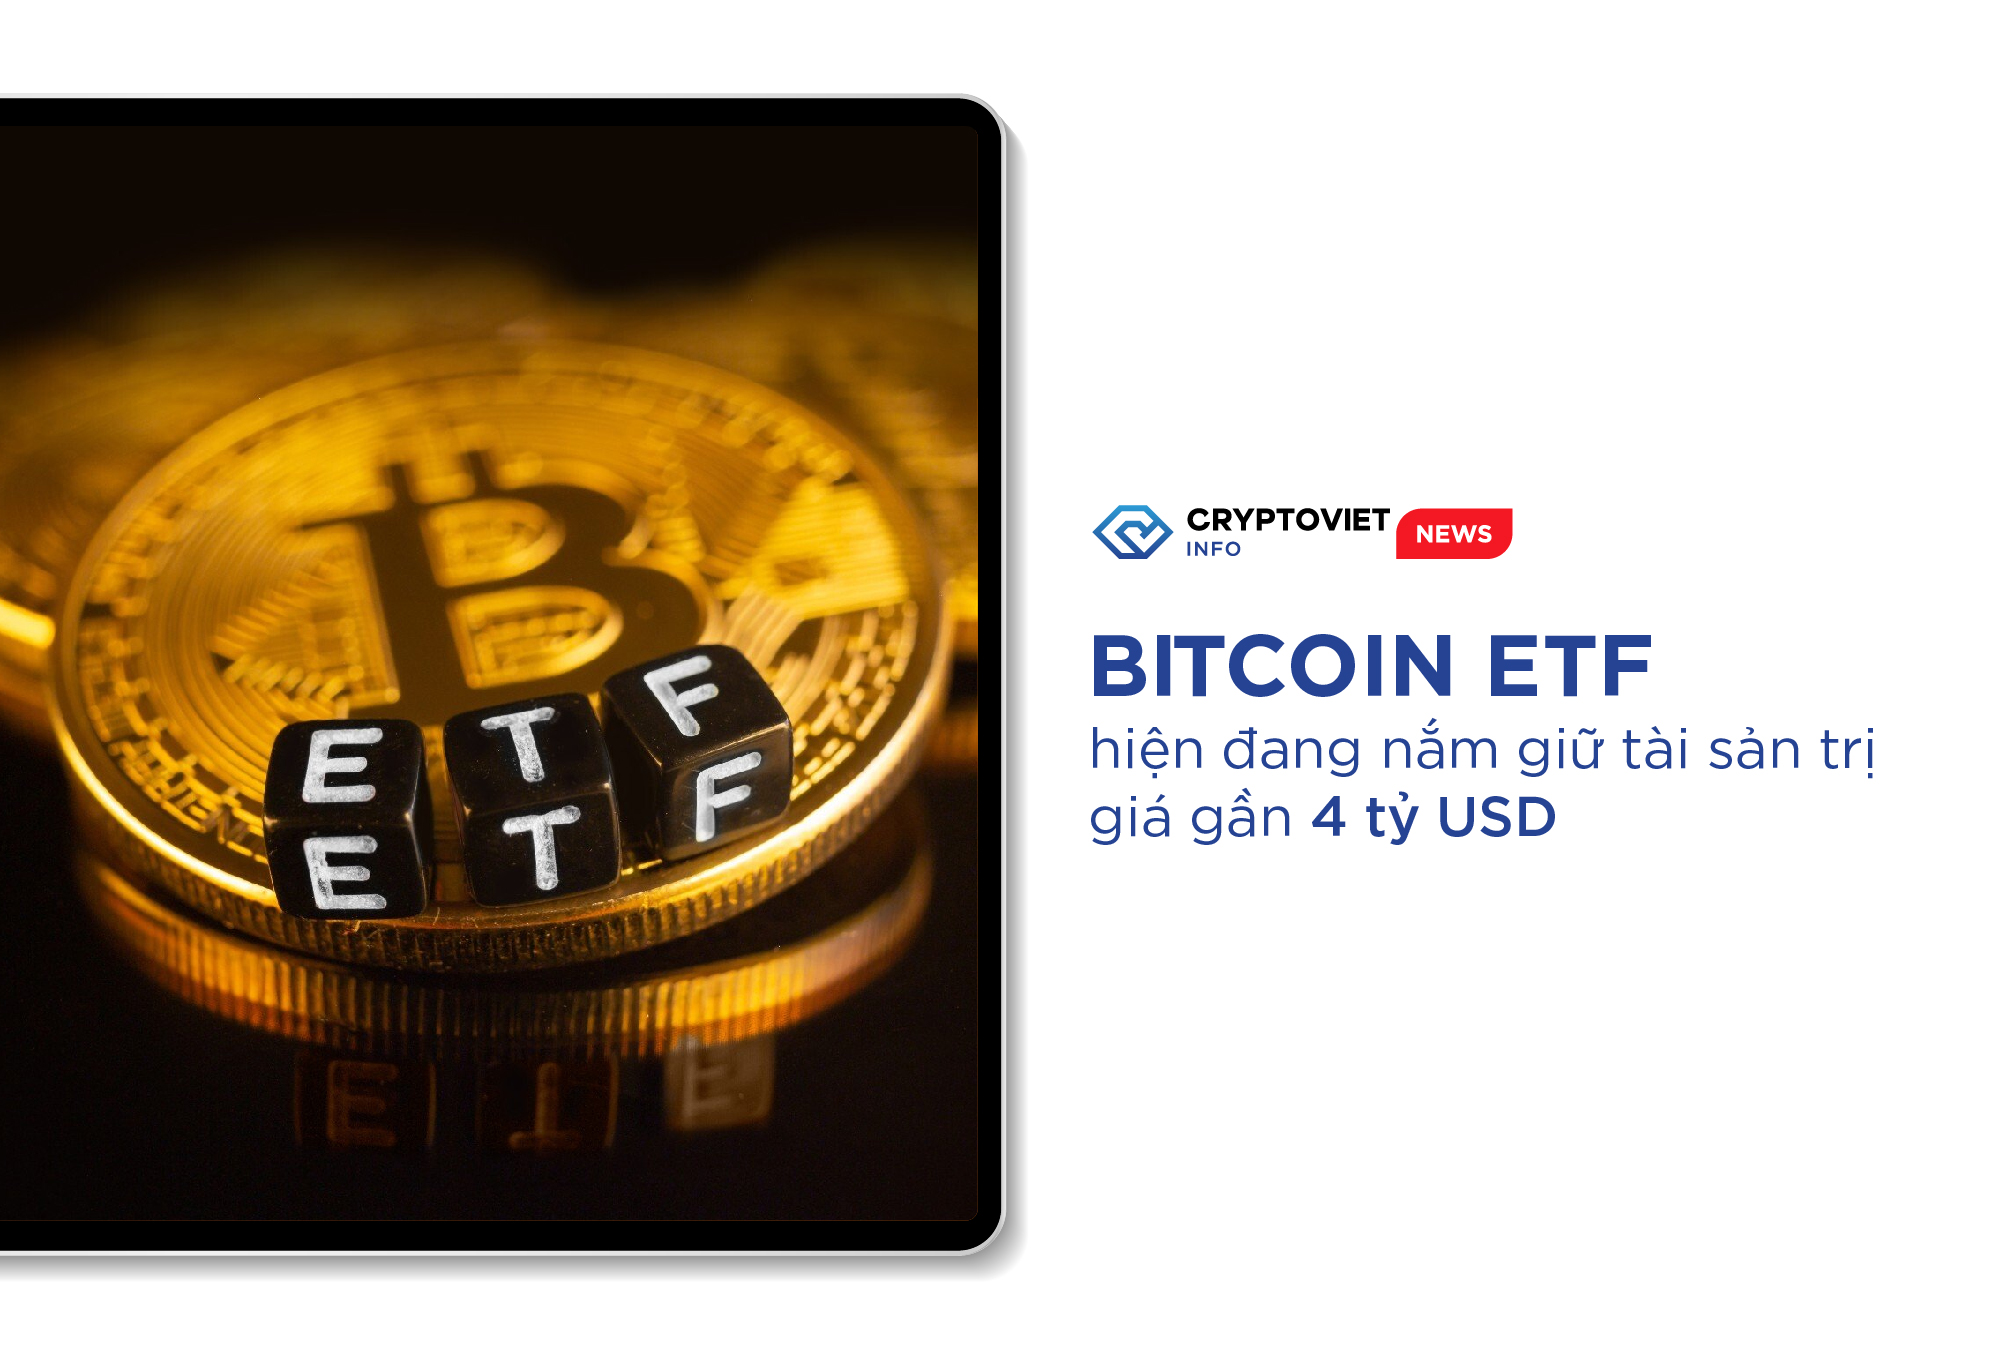 Bitcoin ETF hiện đang nắm giữ tài sản trị giá gần 4 tỷ USD